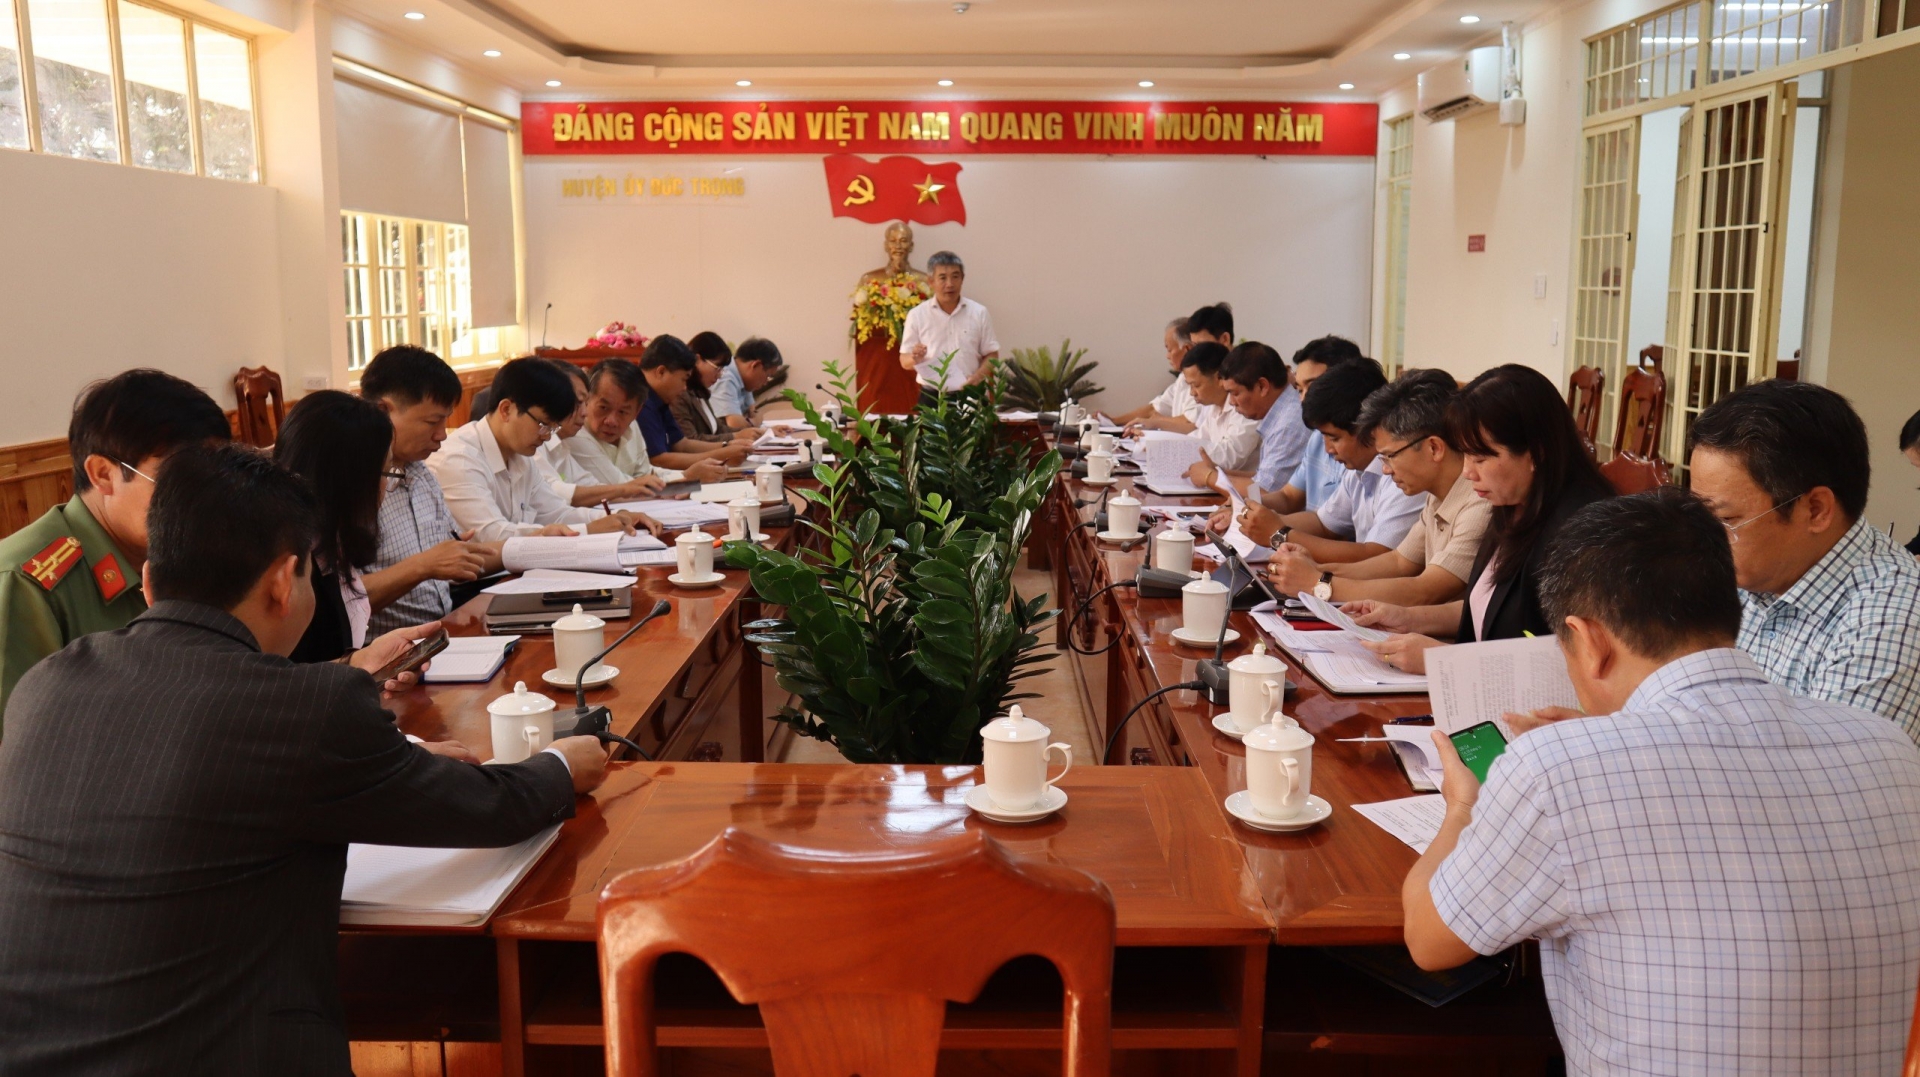 Đồng chí Bùi Sơn Điền – Bí thư Huyện ủy Đức Trọng, phát biểu tại cuộc họp